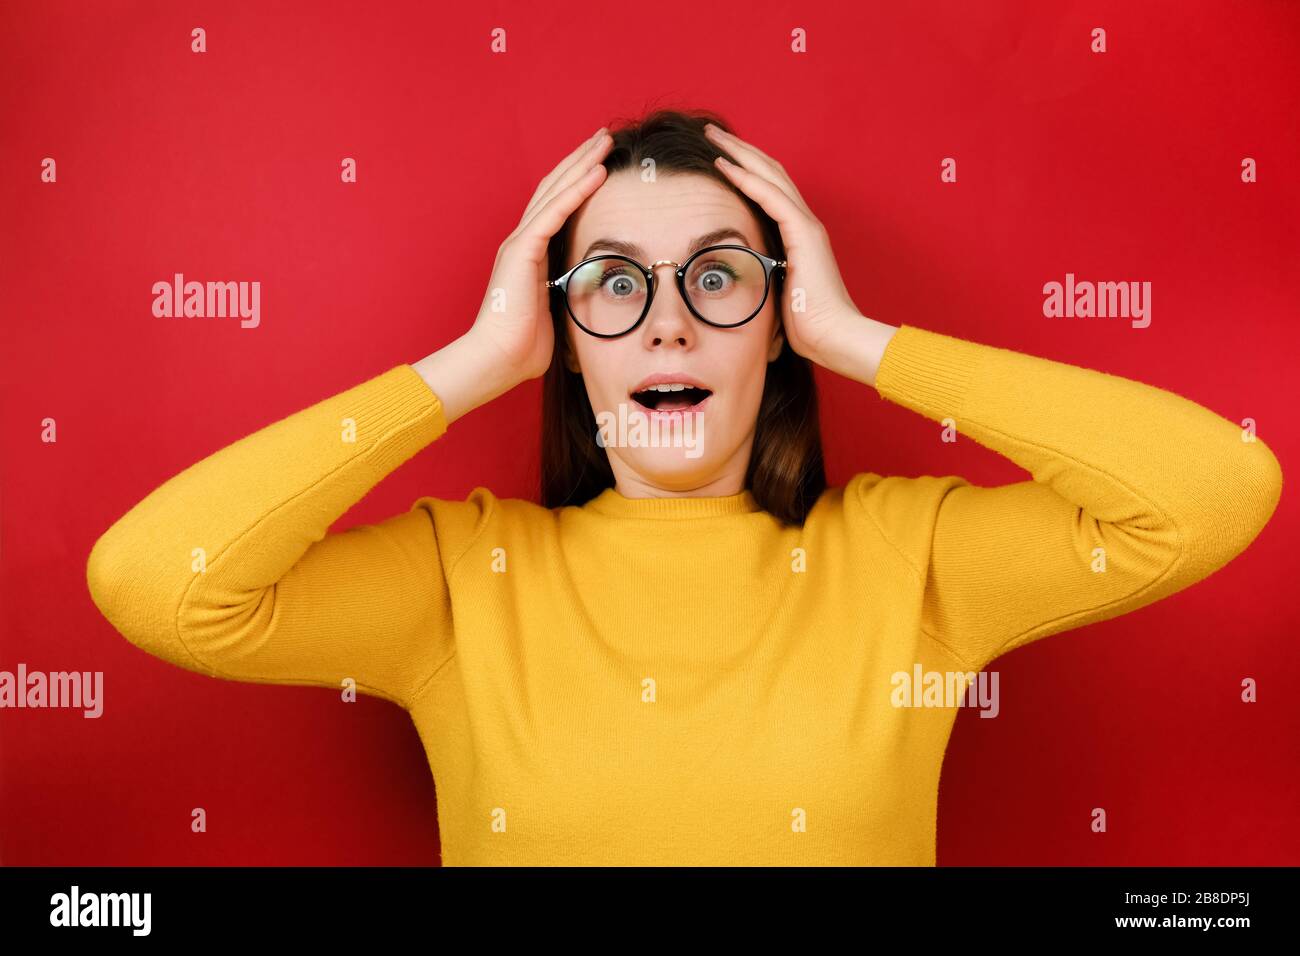 La donna spaventata Emotion guarda con espressione omg, tiene le mani vicino alla testa, indossa occhiali trasparenti, maglione giallo, isolato su sfondo rosso studio. Foto Stock